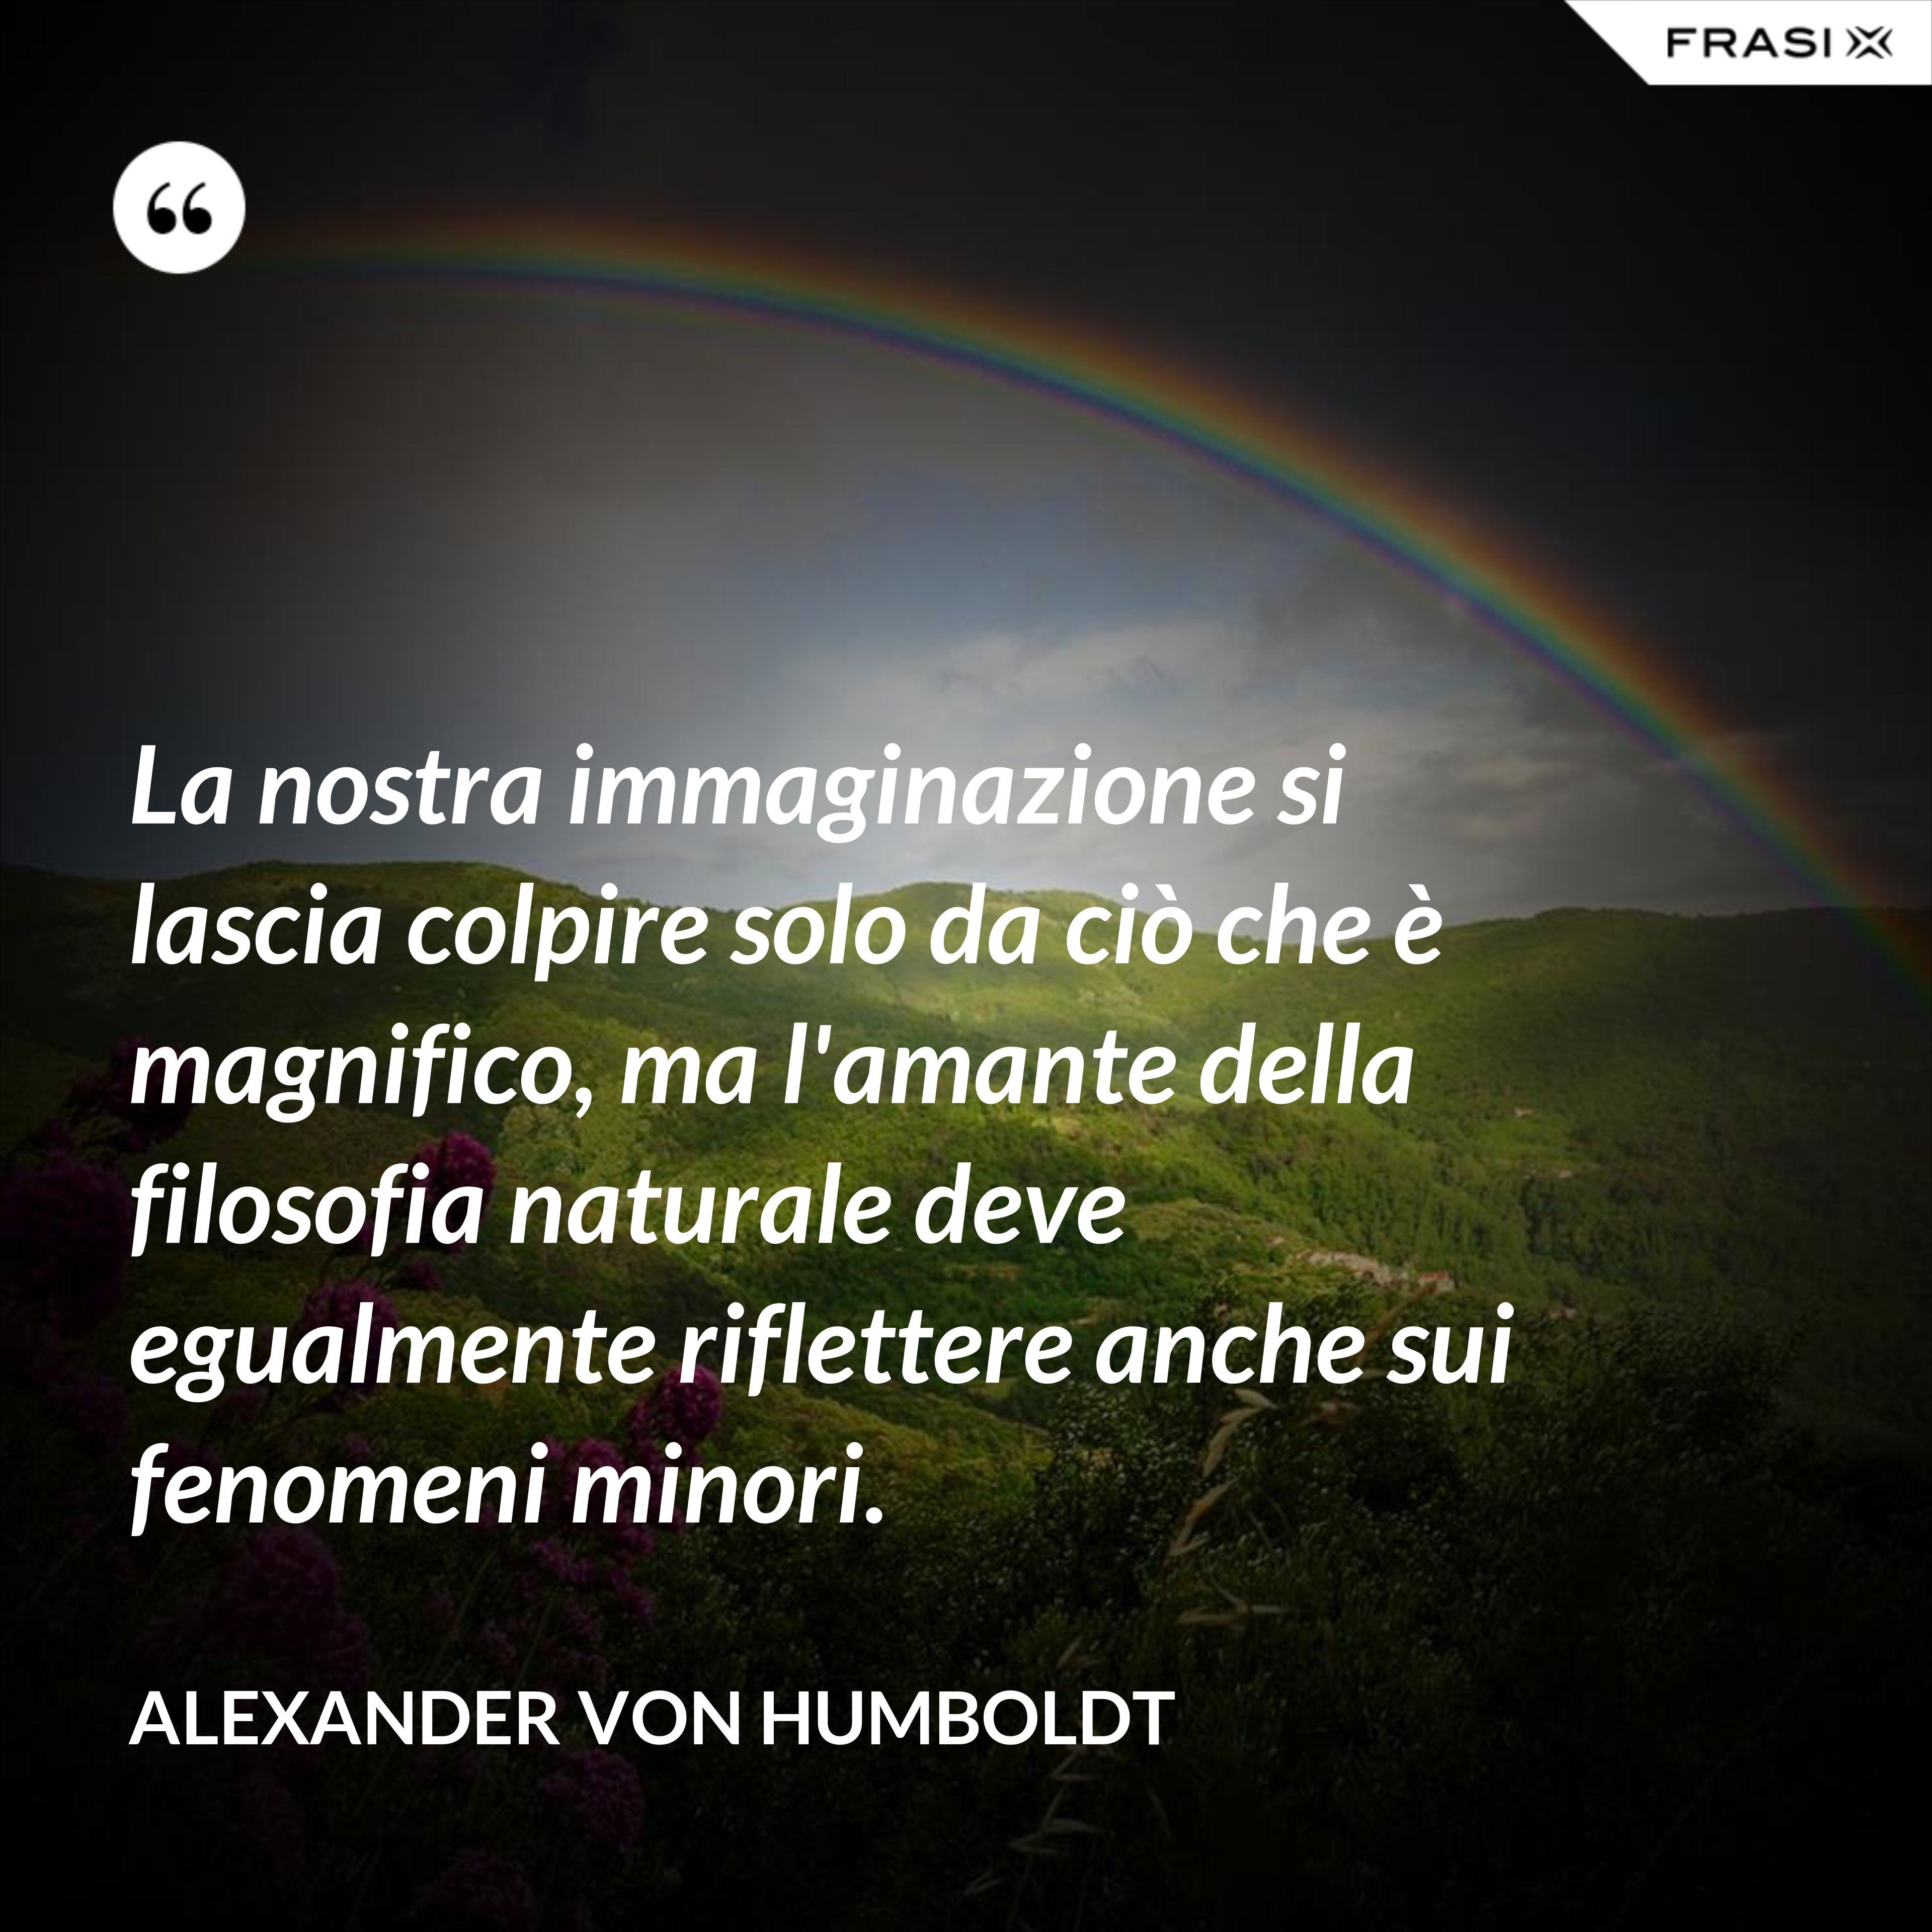 La nostra immaginazione si lascia colpire solo da ciò che è magnifico, ma l'amante della filosofia naturale deve egualmente riflettere anche sui fenomeni minori. - Alexander Von Humboldt